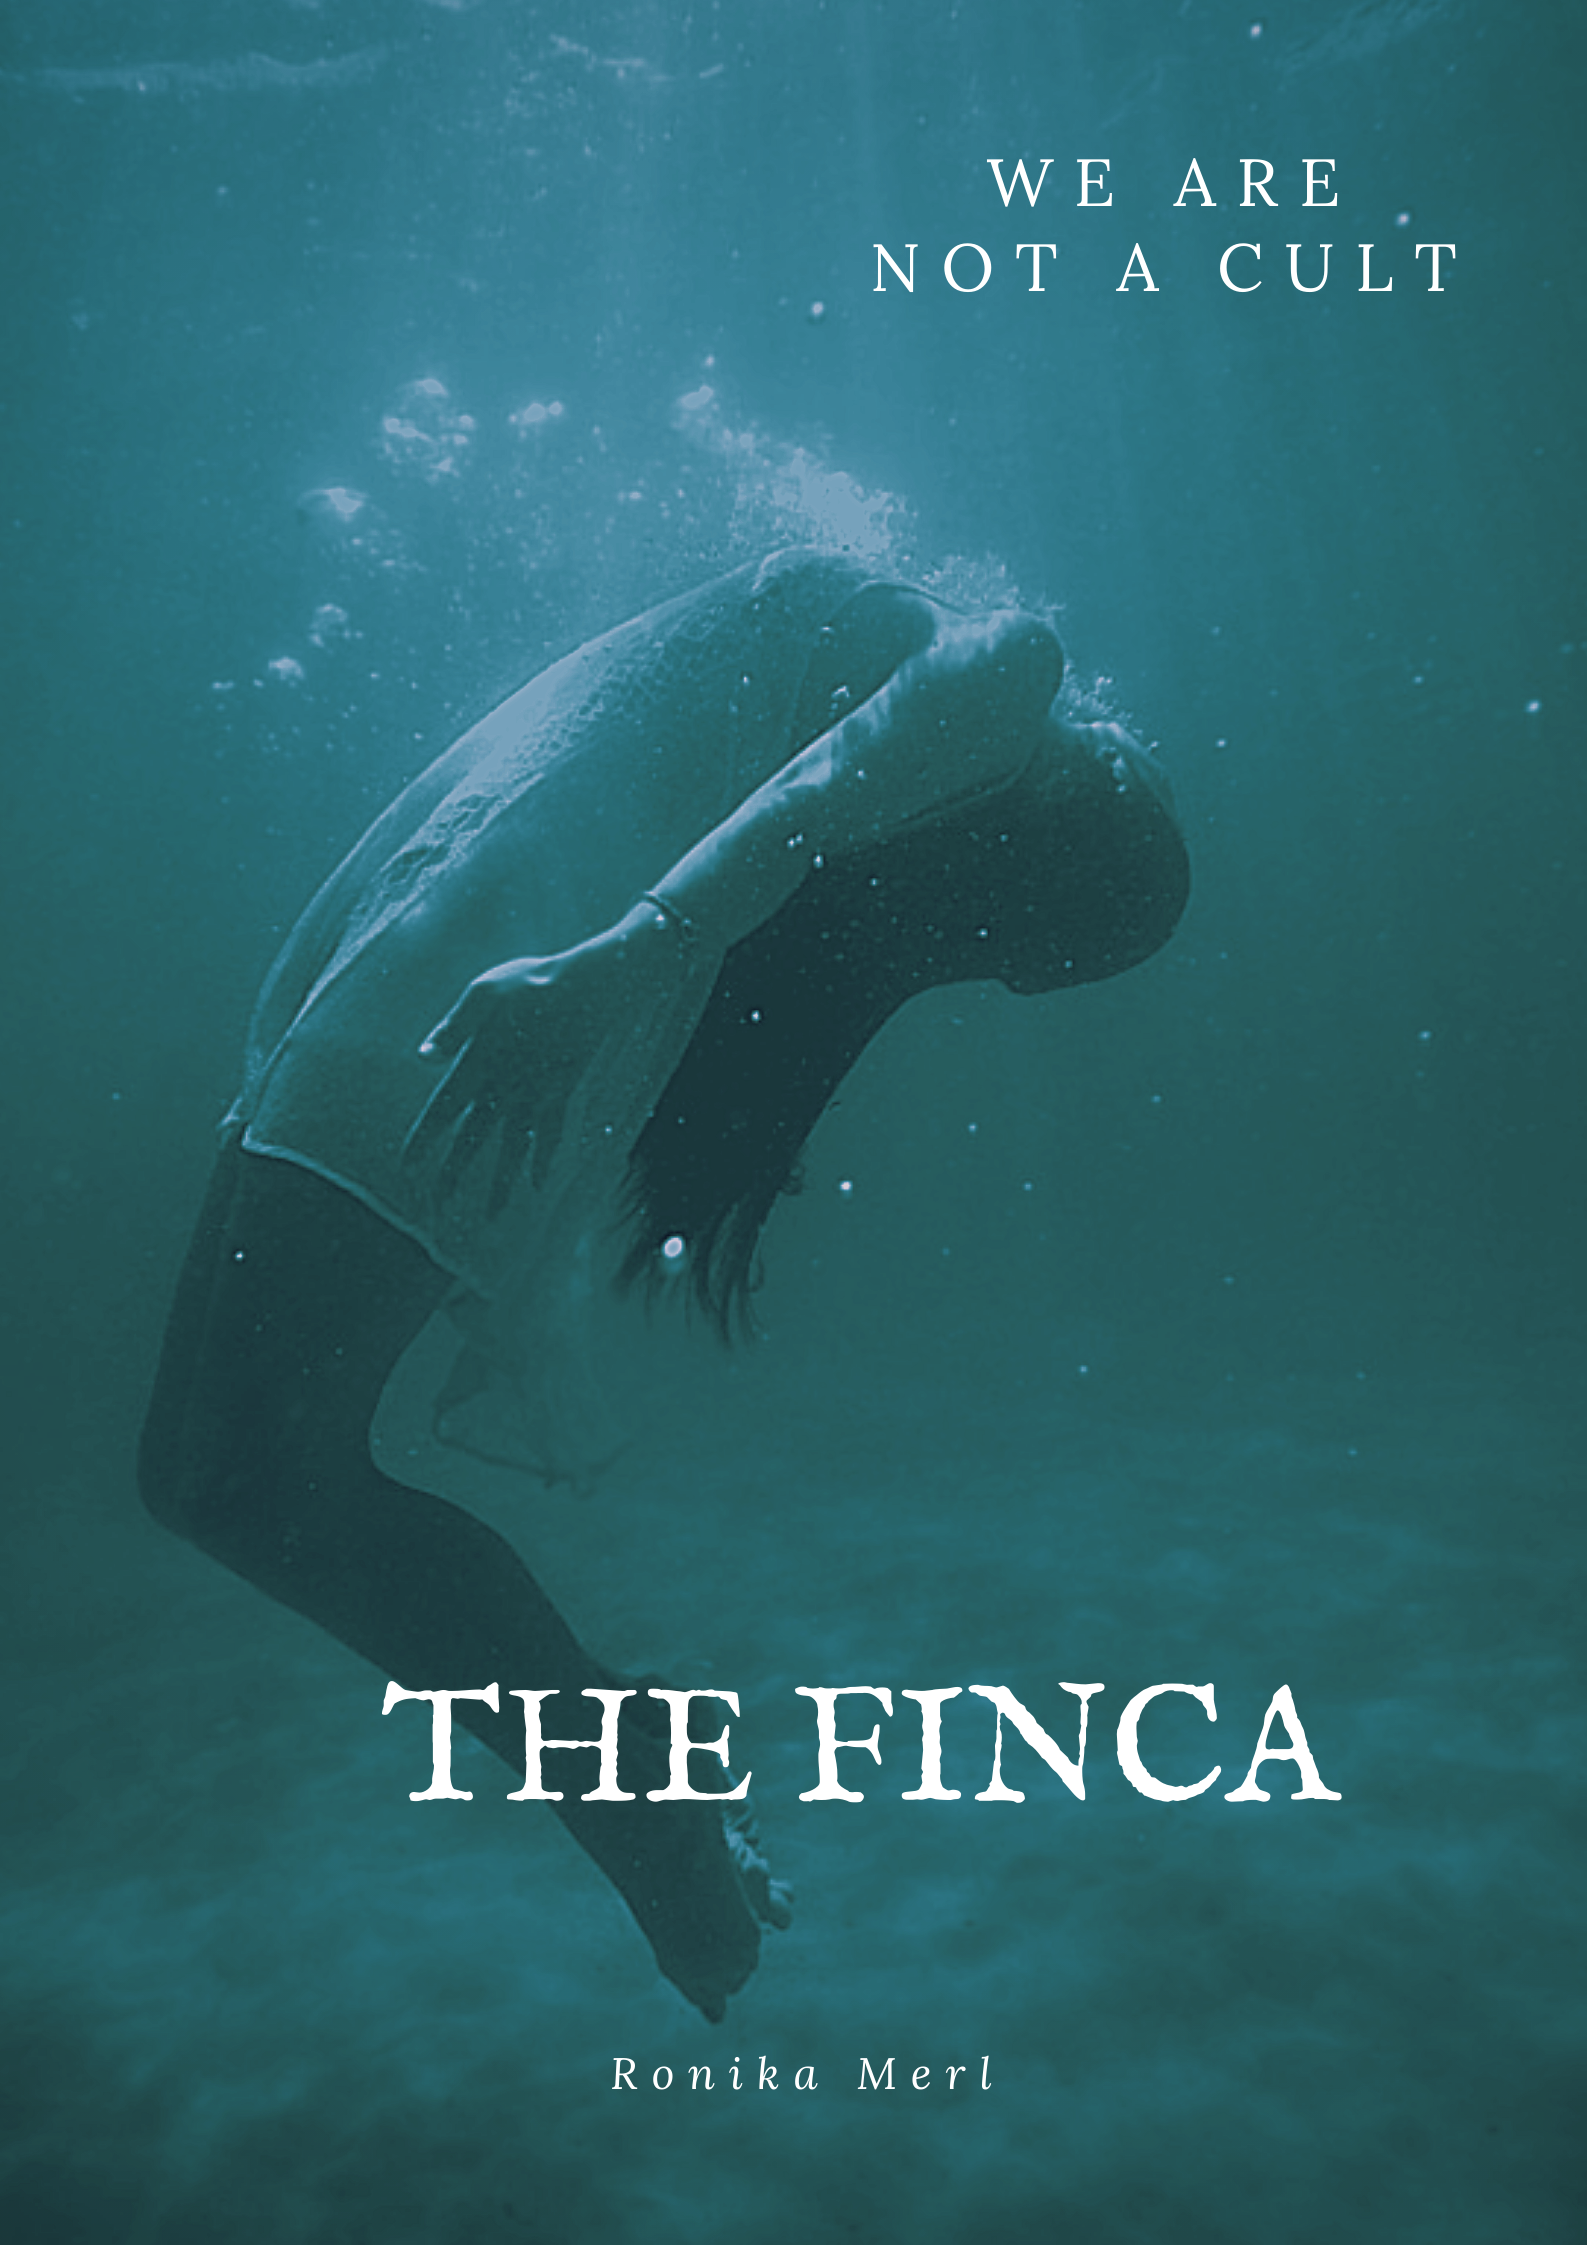 THE FINCA